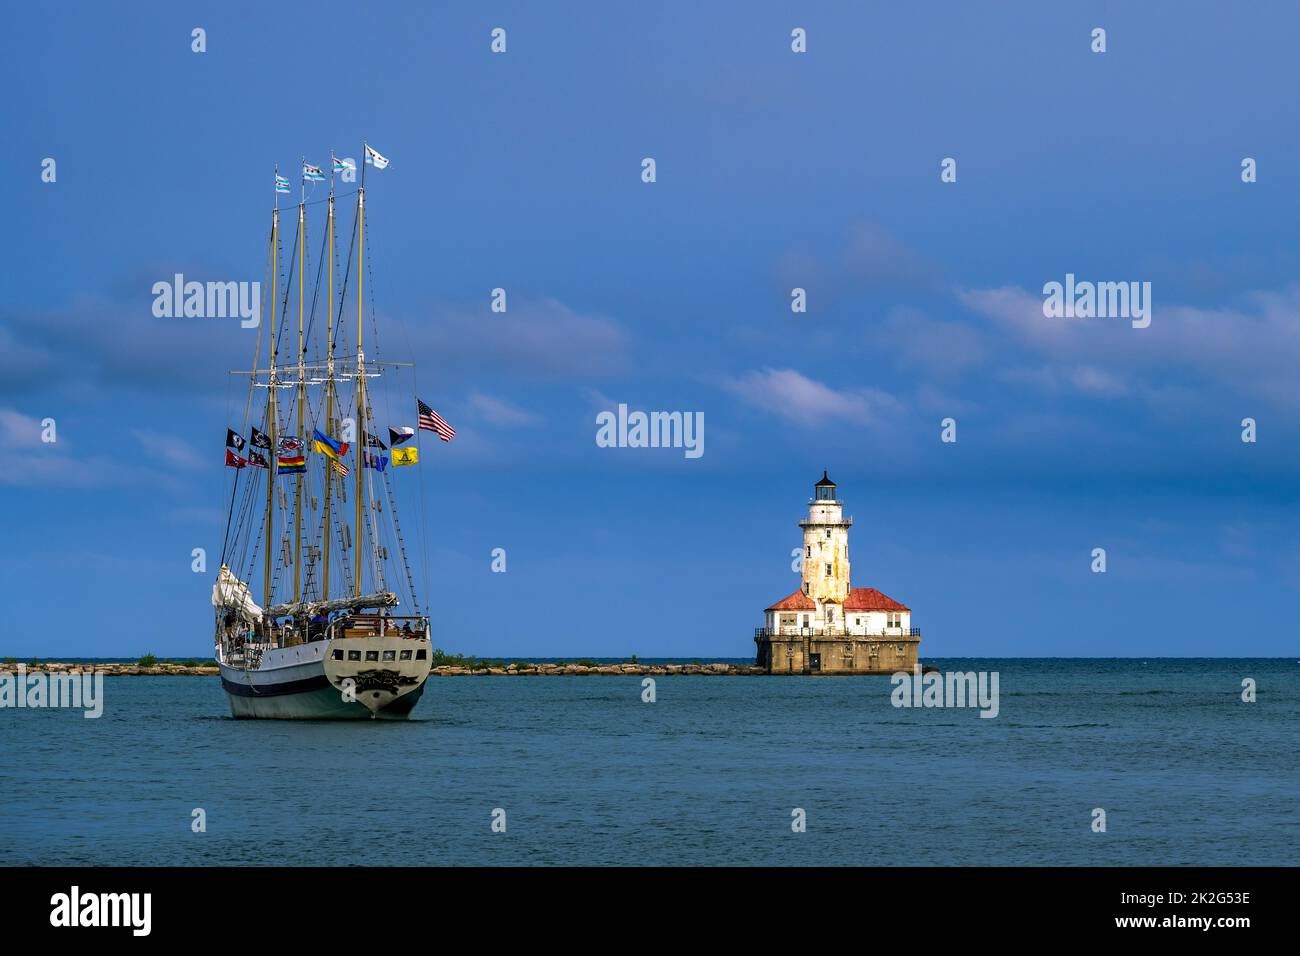 Barco de vela con el faro del puerto de Chicago como telón de fondo, Chicago, Illinois, EE.UU Foto de stock